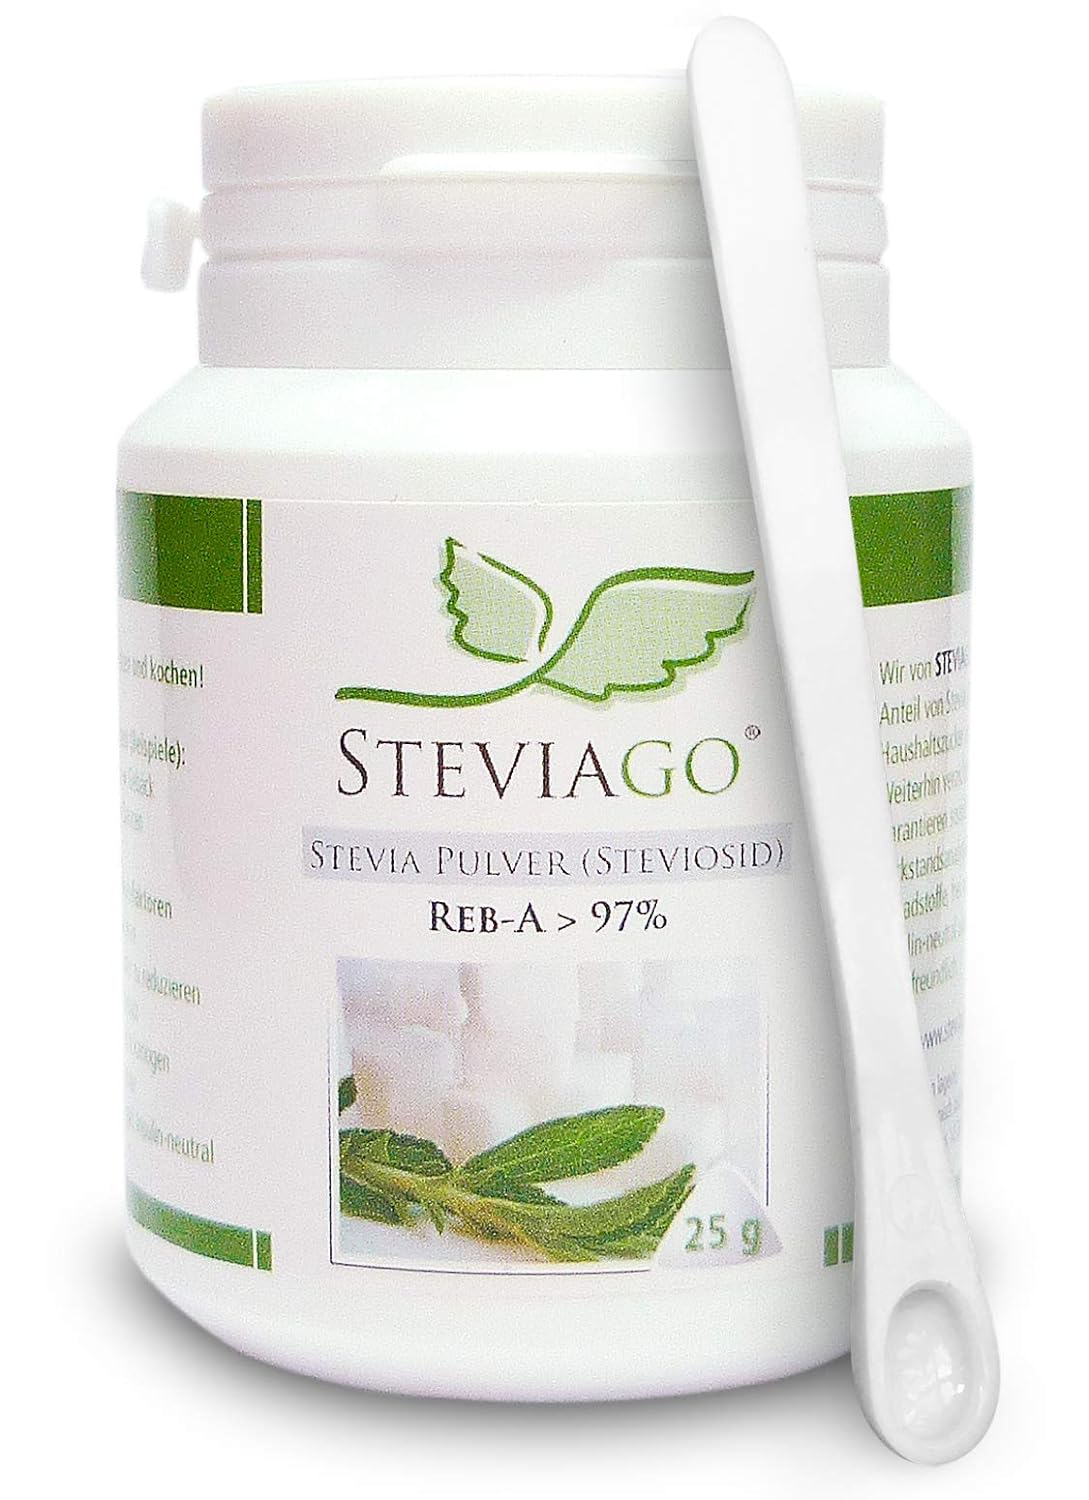 Stevia Pulver (Reb-A > 97%) - 25g